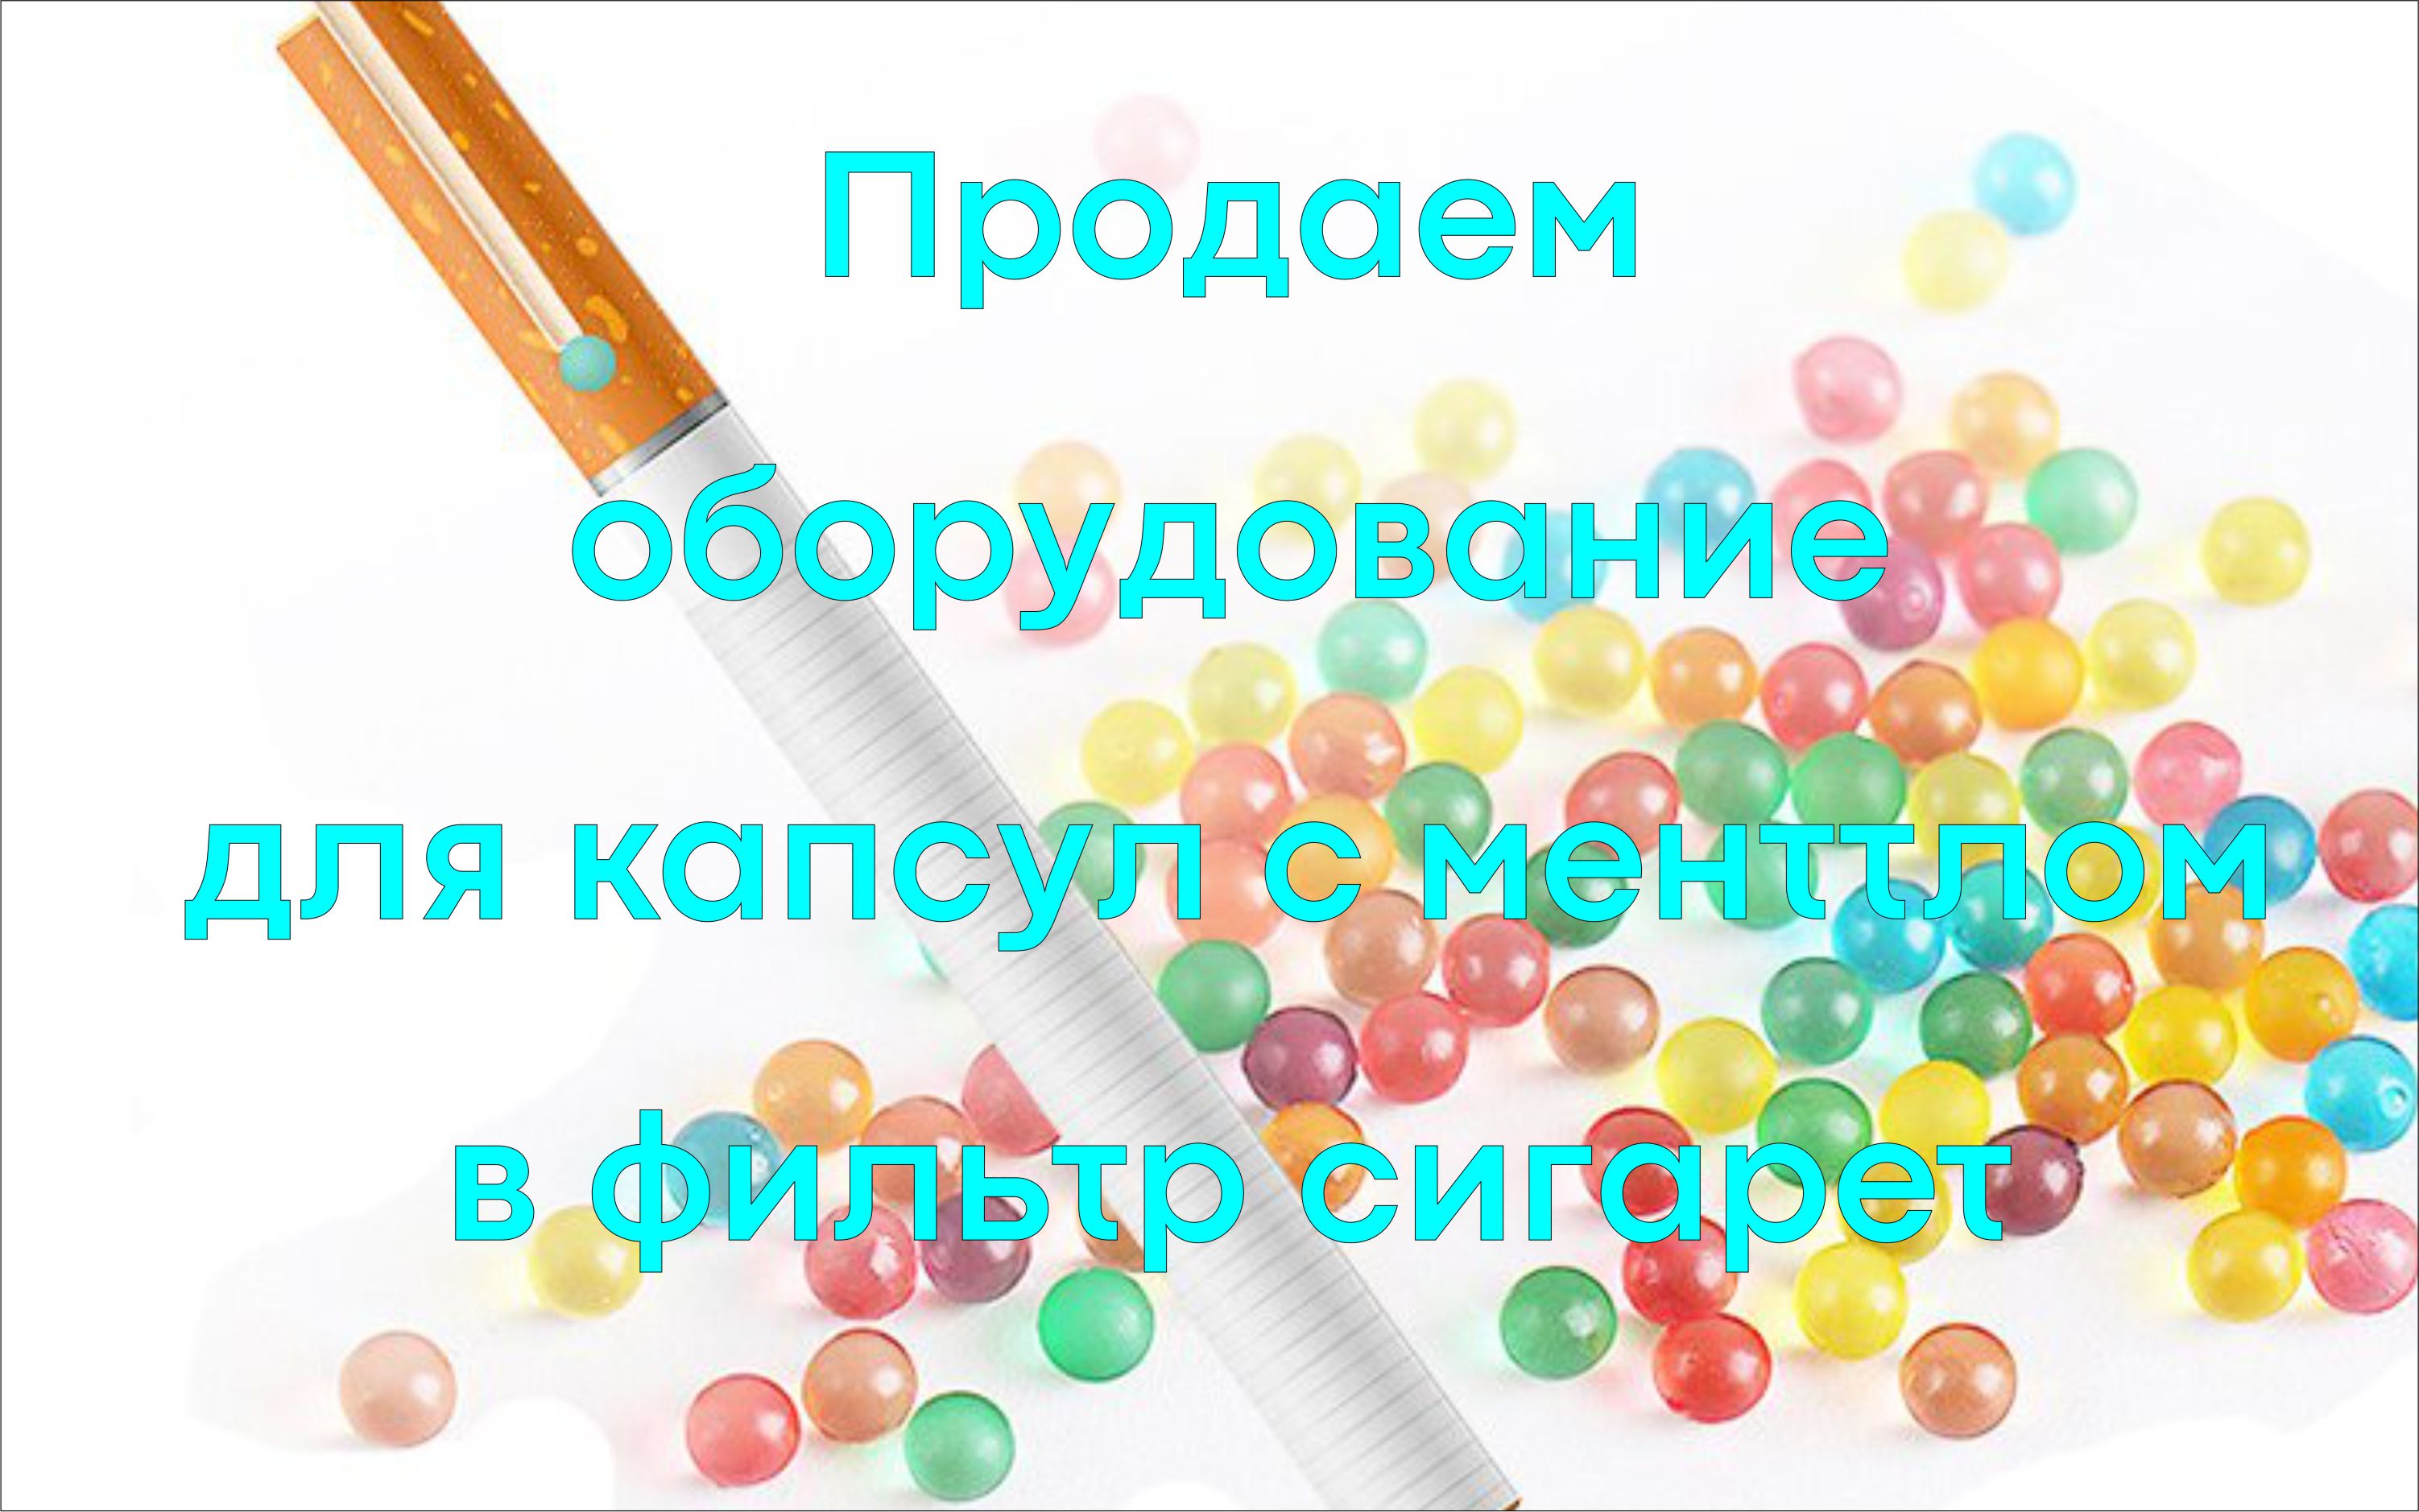 www.Kapsulator.ru Capsulator uzalishaji wa vidonge vya pande zote na vifuniko vya gelatin, agar, alginate